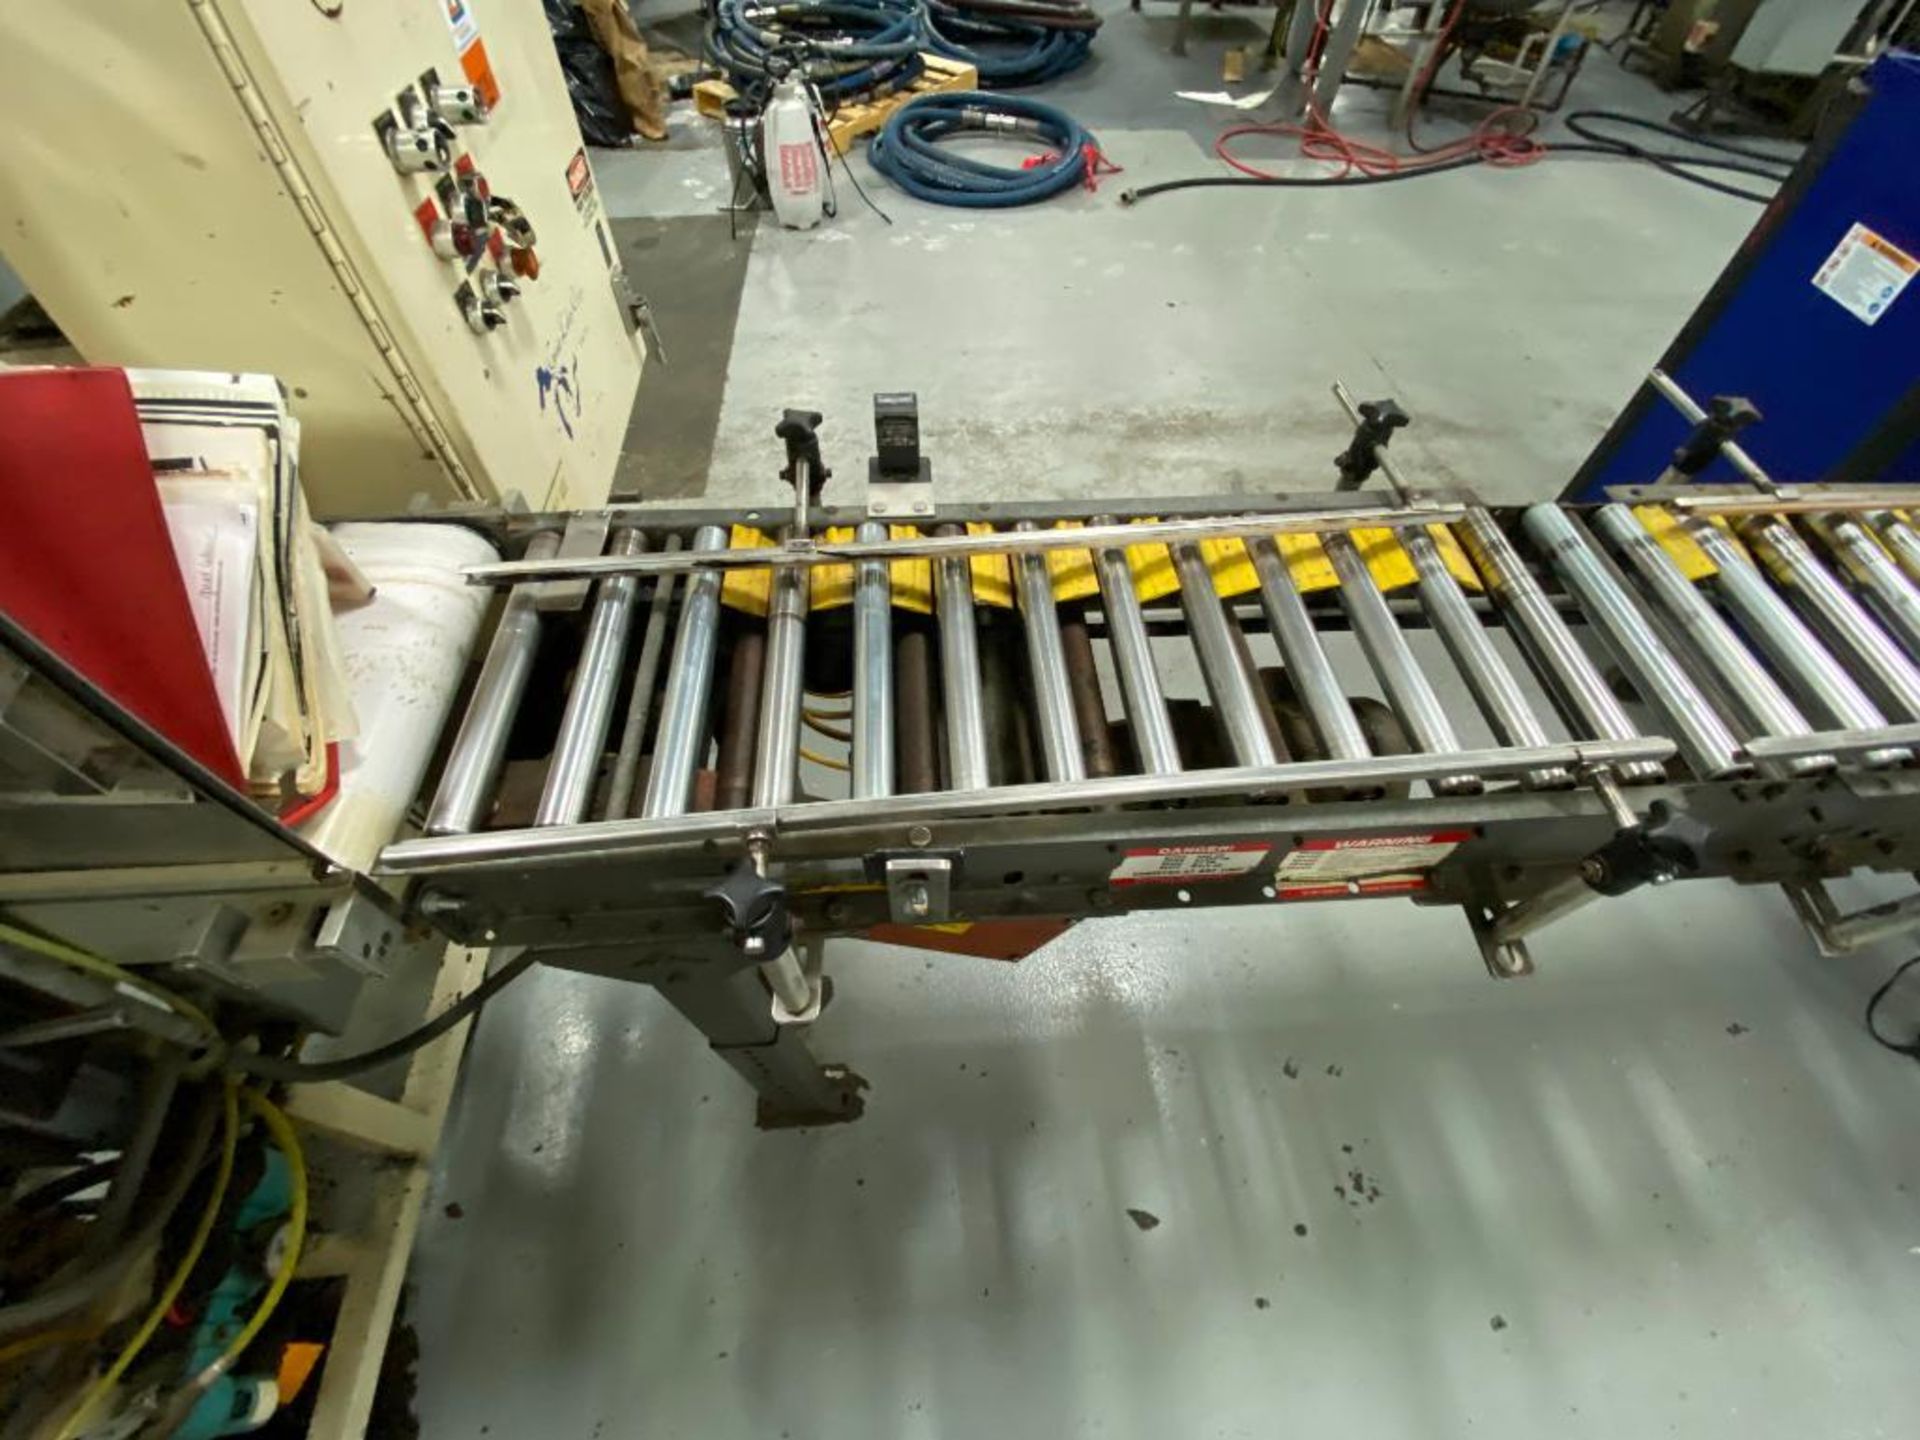 mild steel power roller conveyor, 156 in. x 12 in. x 36 in. - Image 5 of 10